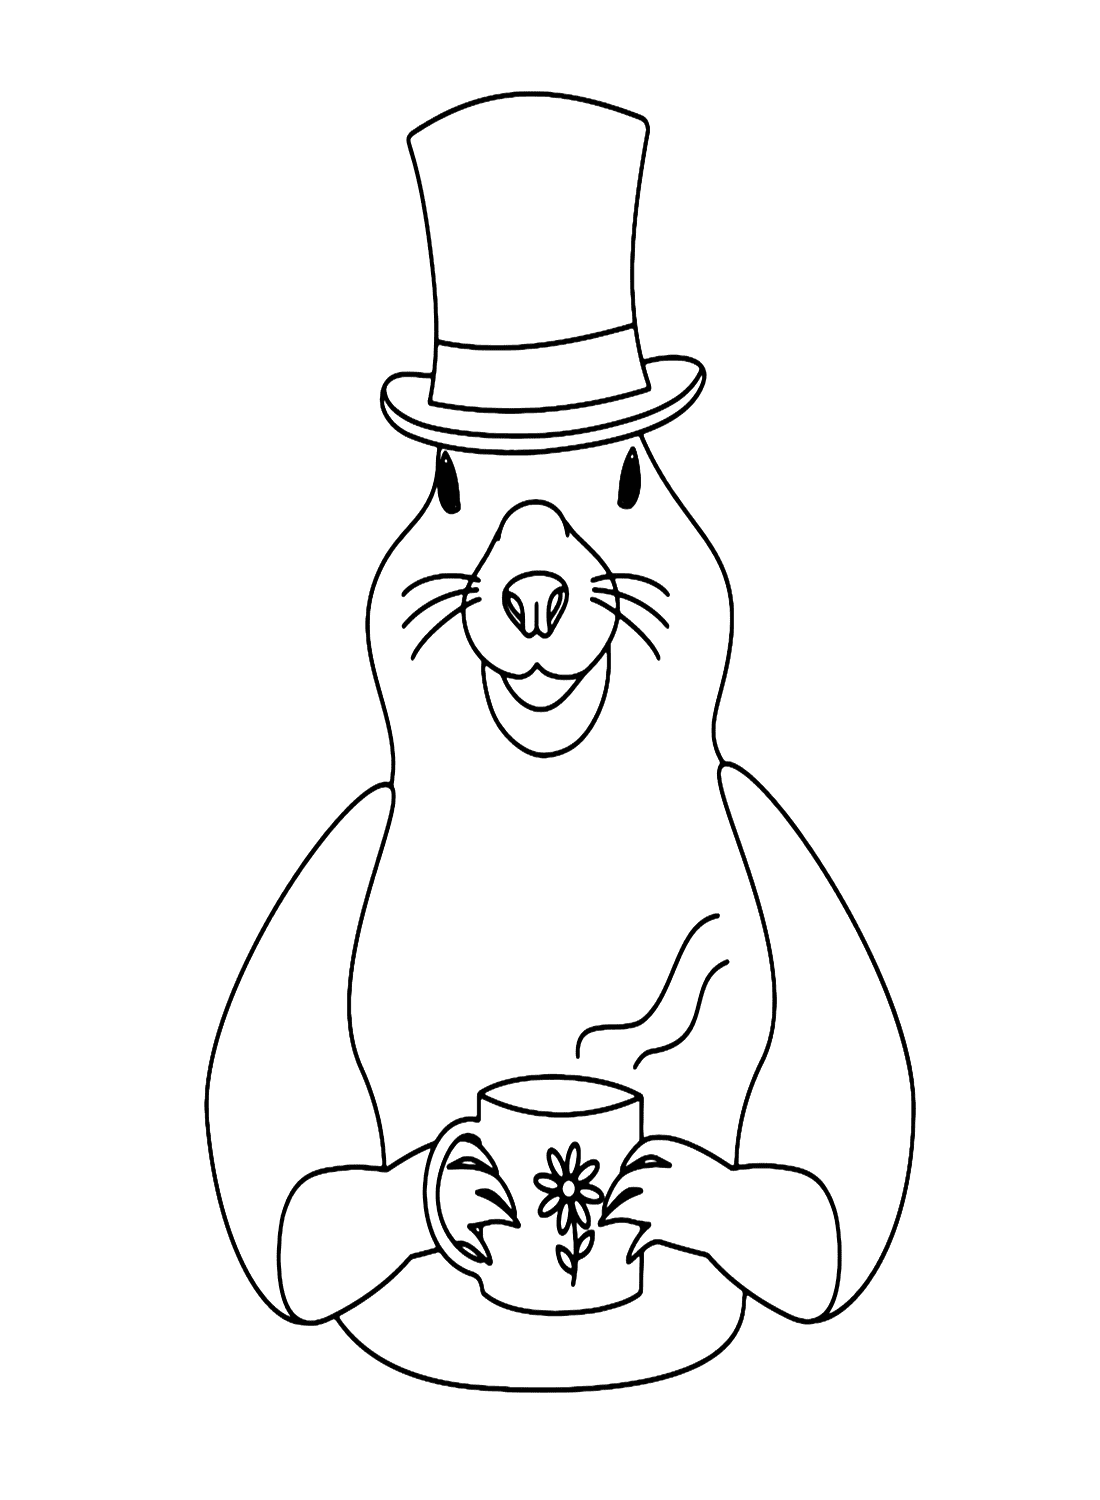 Marmot mit Hut und dampfender Tasse von Marmot